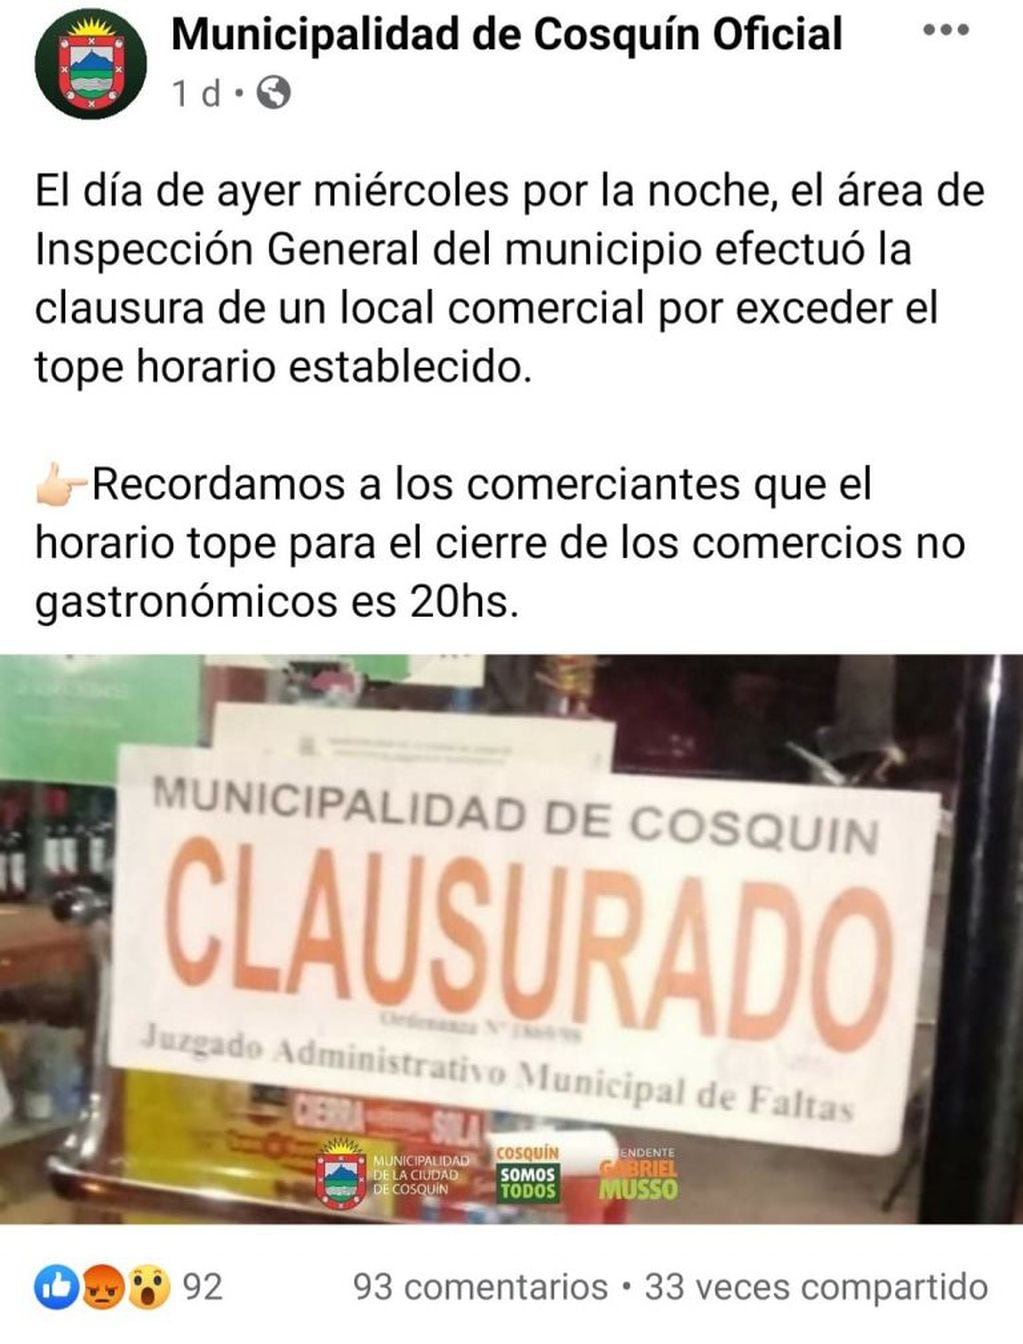 Mensaje difundido por el Municipio de la ciudad de Cosquín. (Foto: captura / Facebook Municipalidad de Cosquín Oficial).